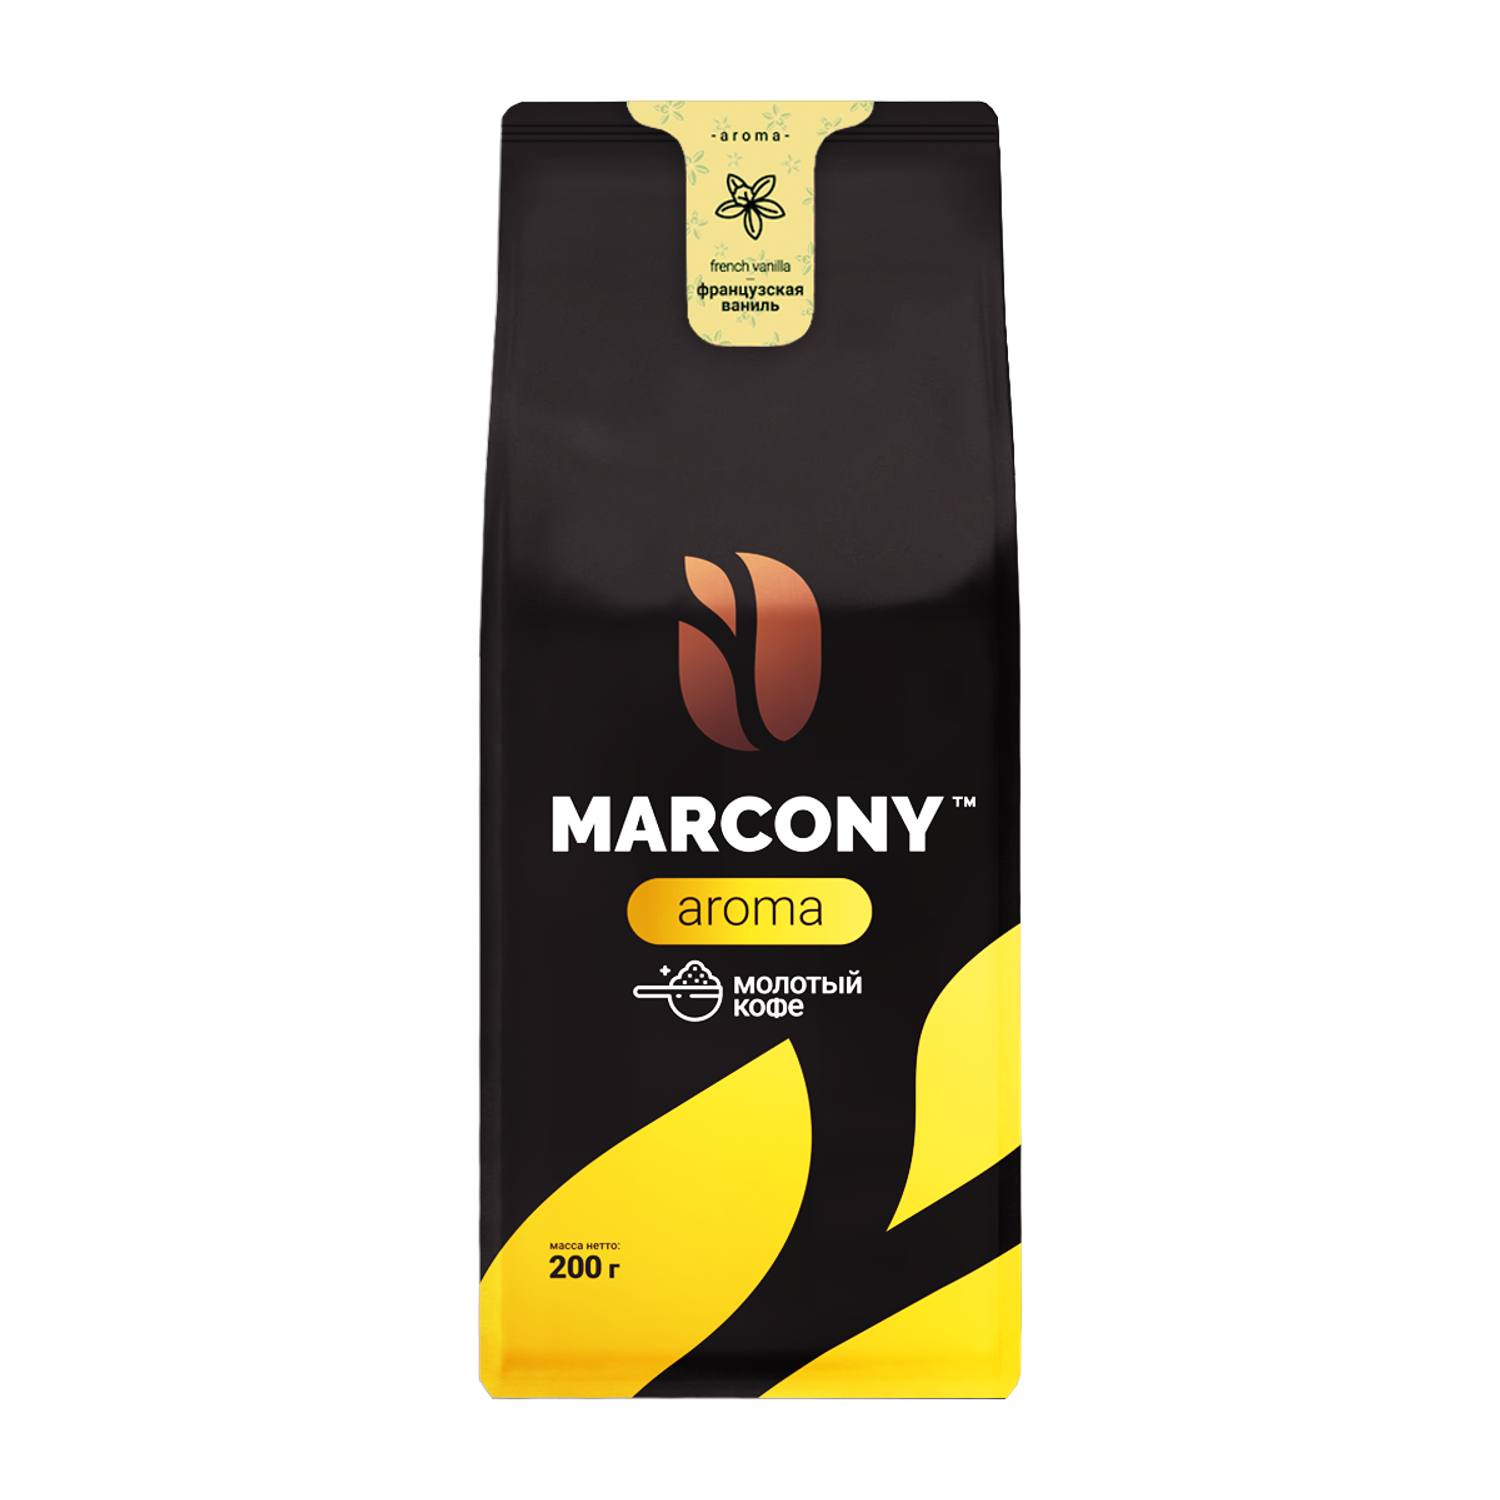 Кофе молотый Marcony Aroma со вкусом Французской ванили 200 г - фото 1